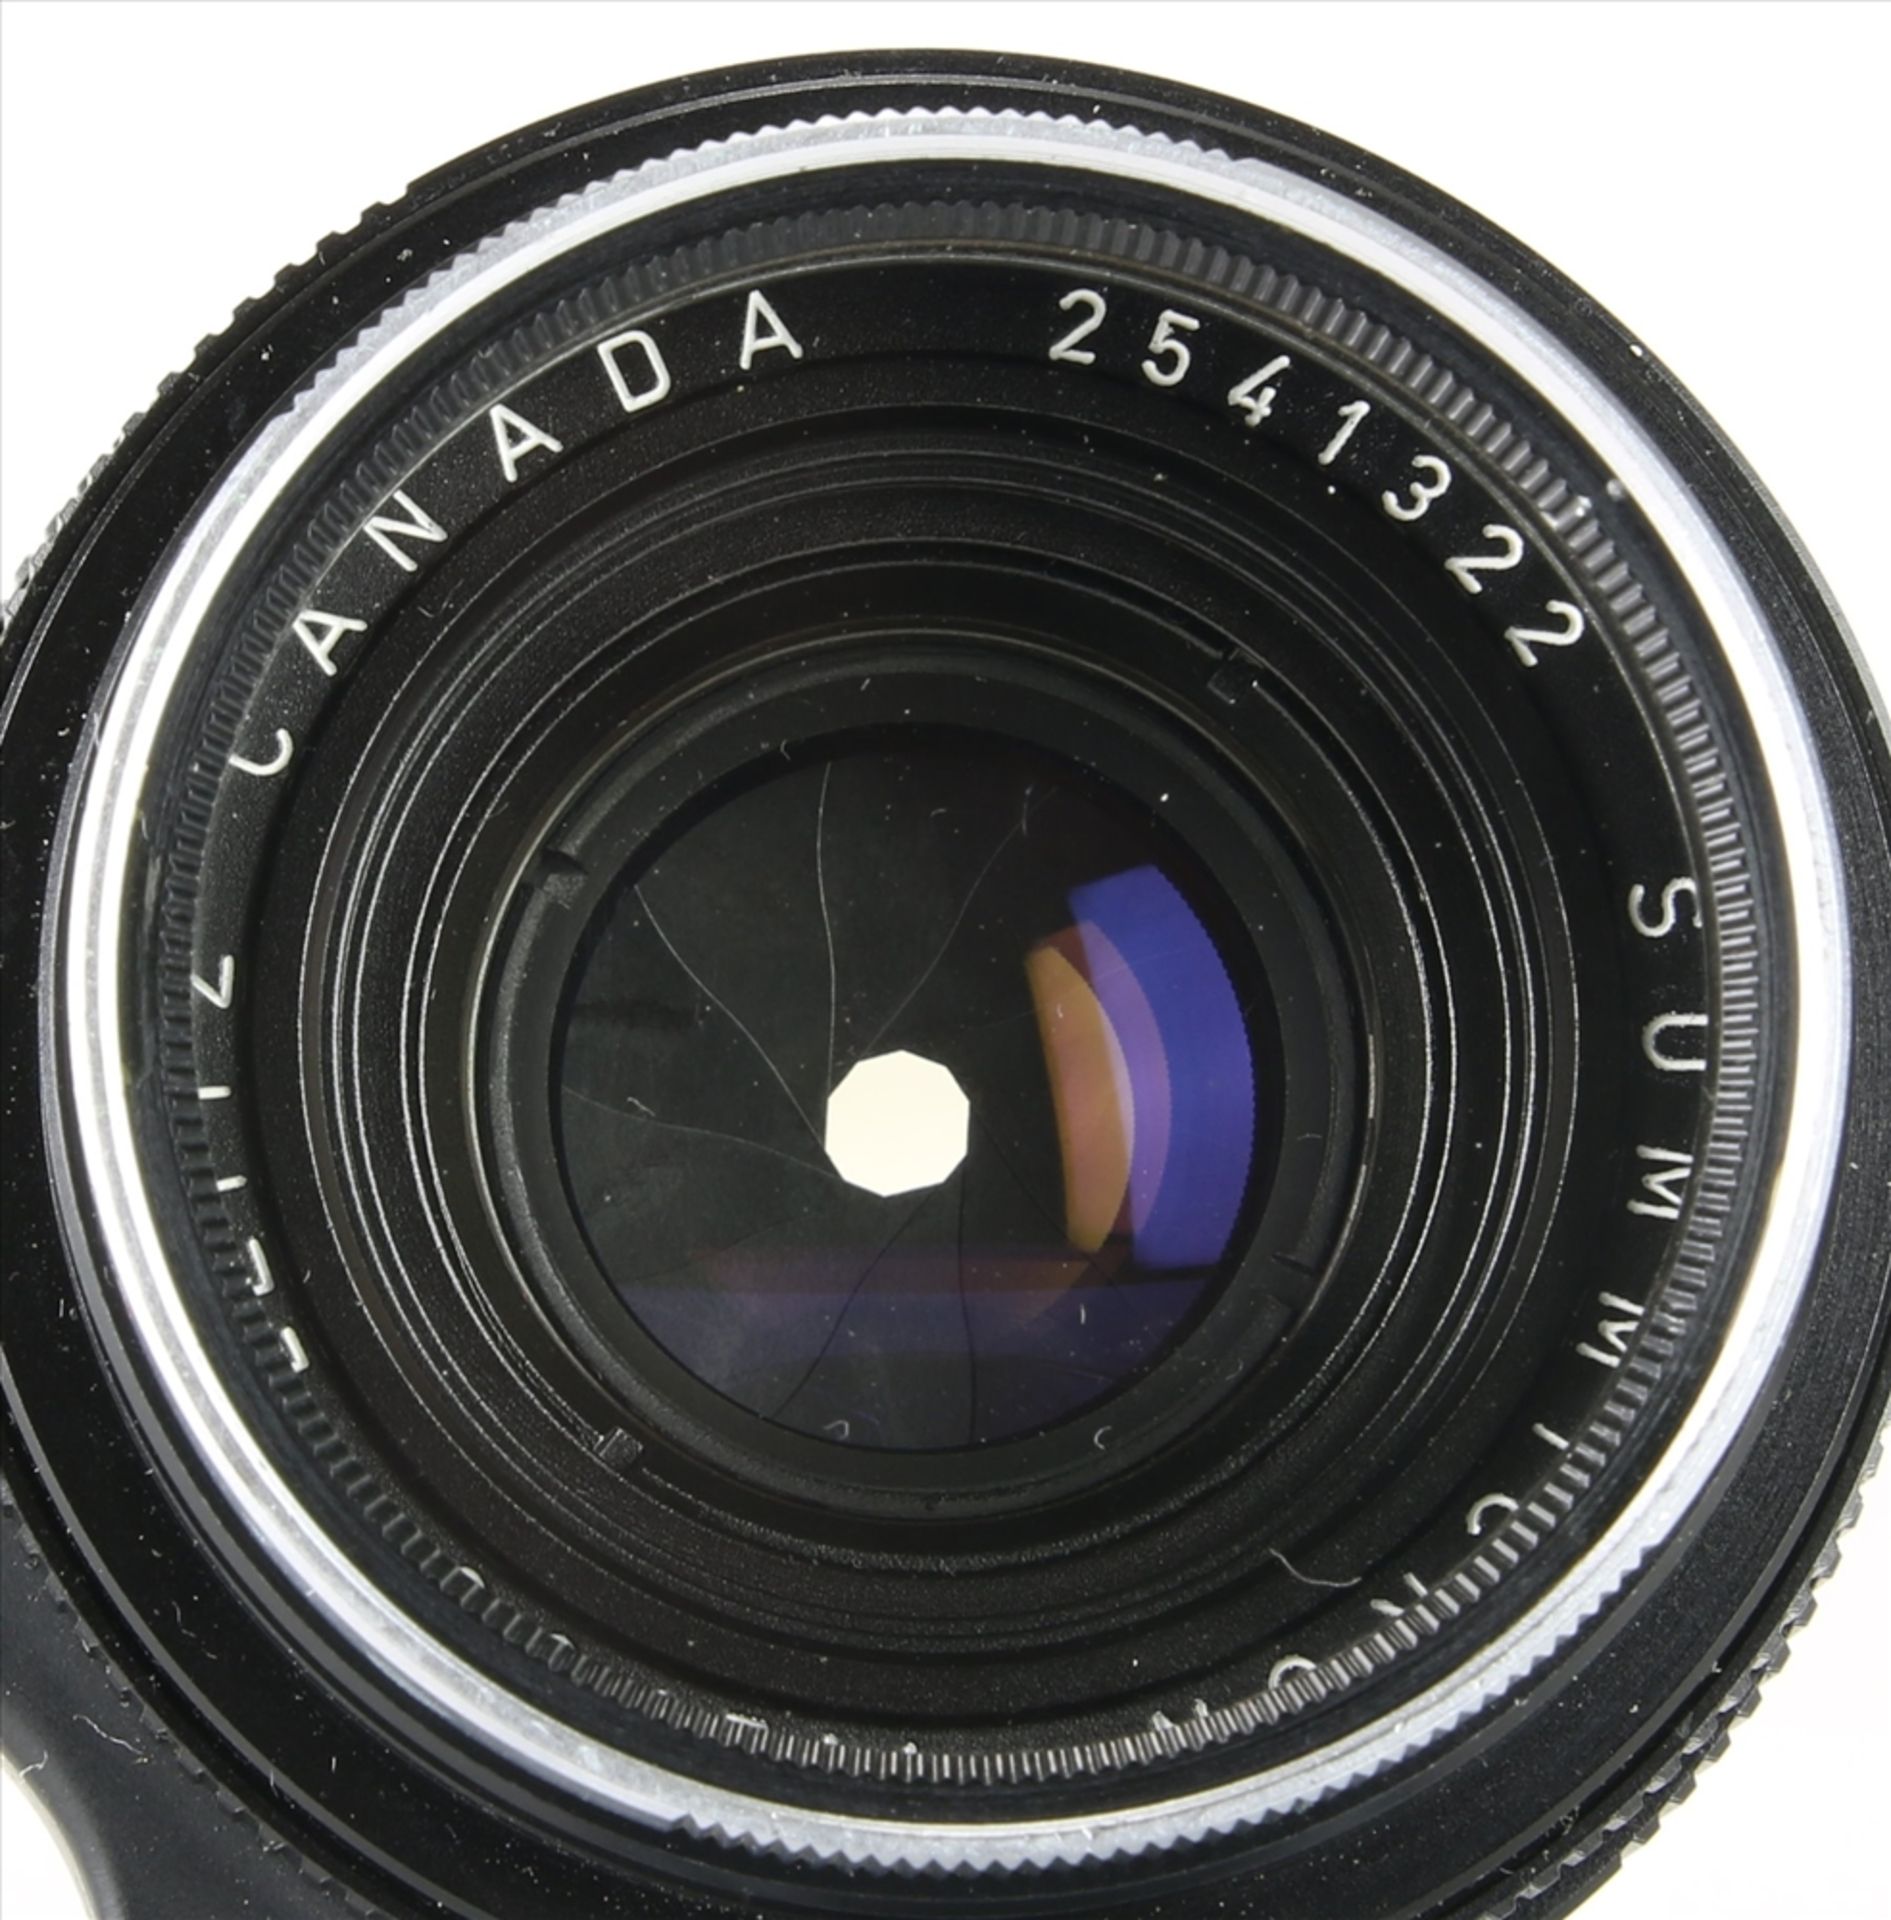 Leica Objektiv Leitz Canada. Summicron 1:2 / 35. Nr. 2541322. In originaler Box. Nicht geprüft. - Bild 6 aus 8